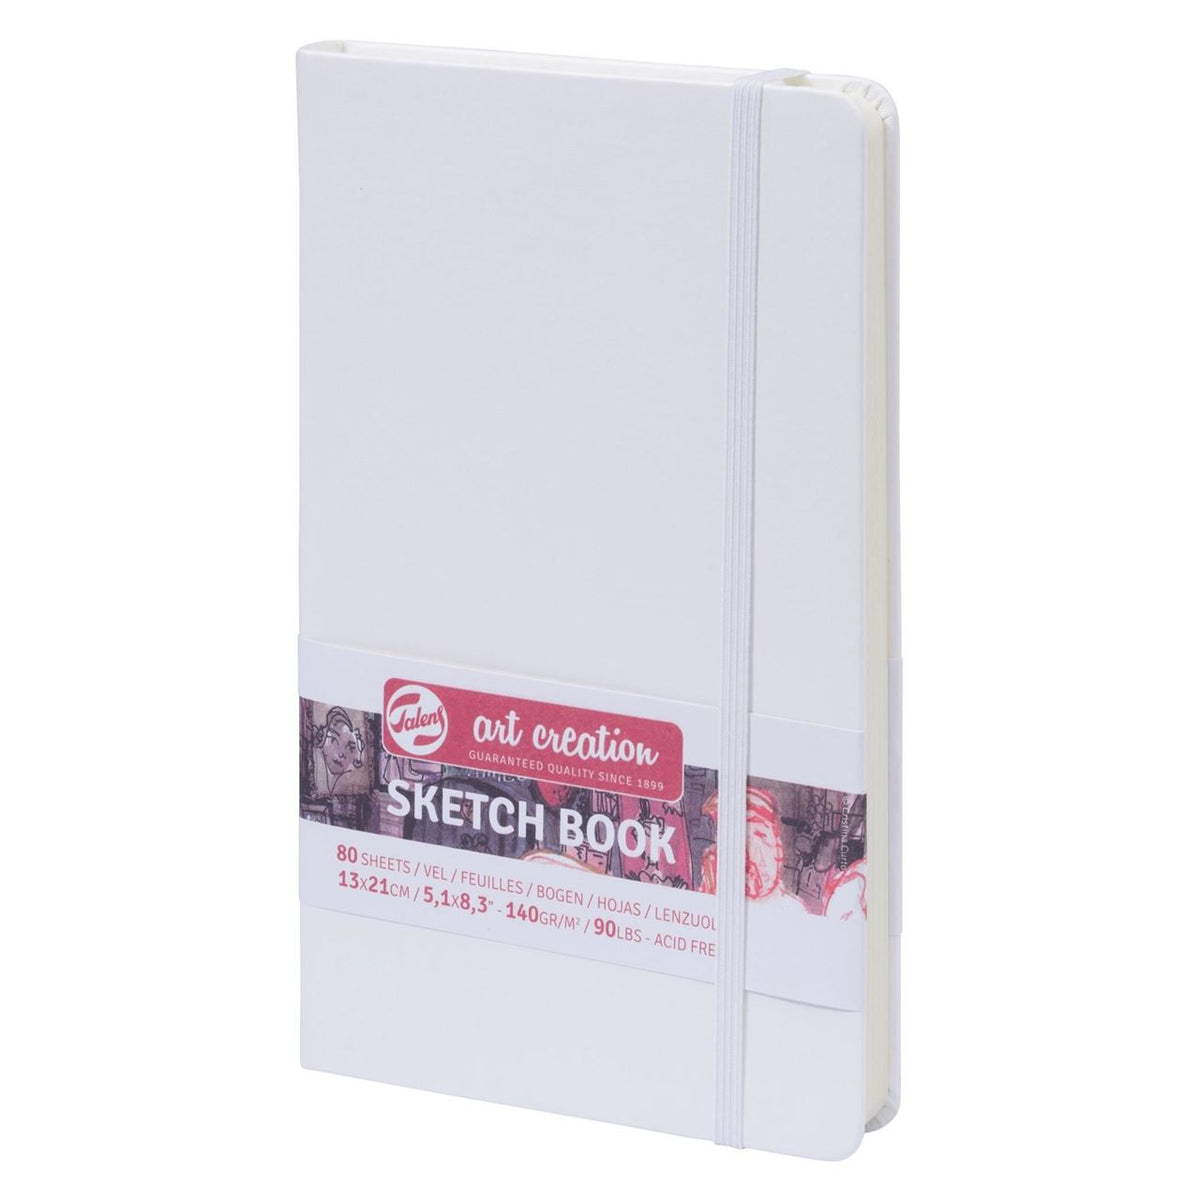 13x21cm Sketch Book - White